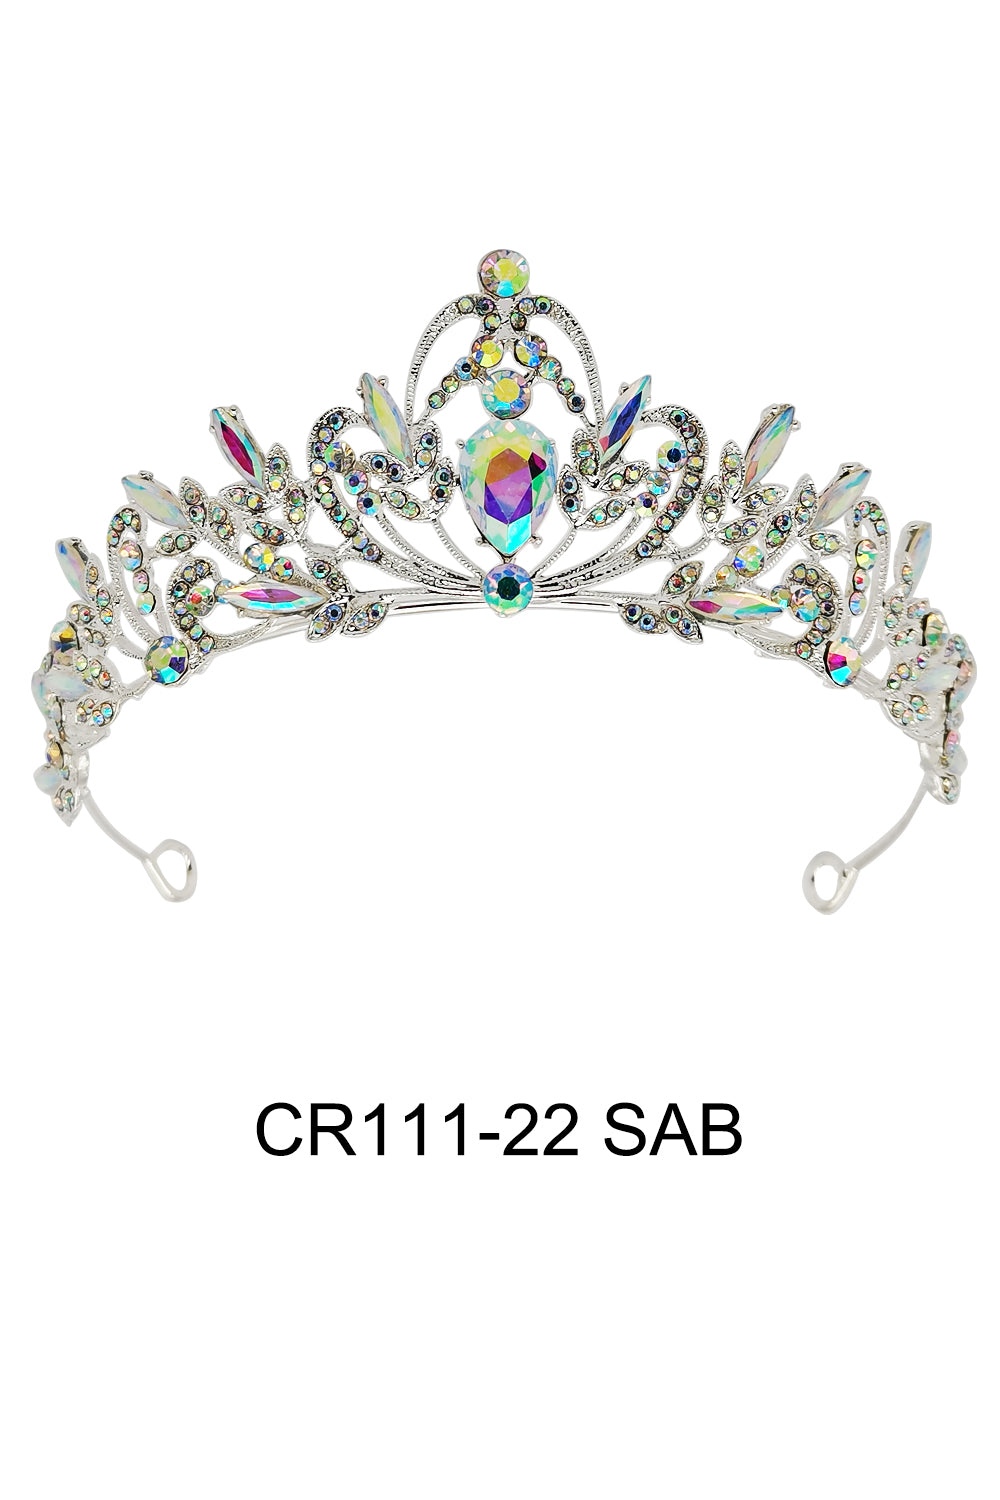 CR111-22SAB (6PC)